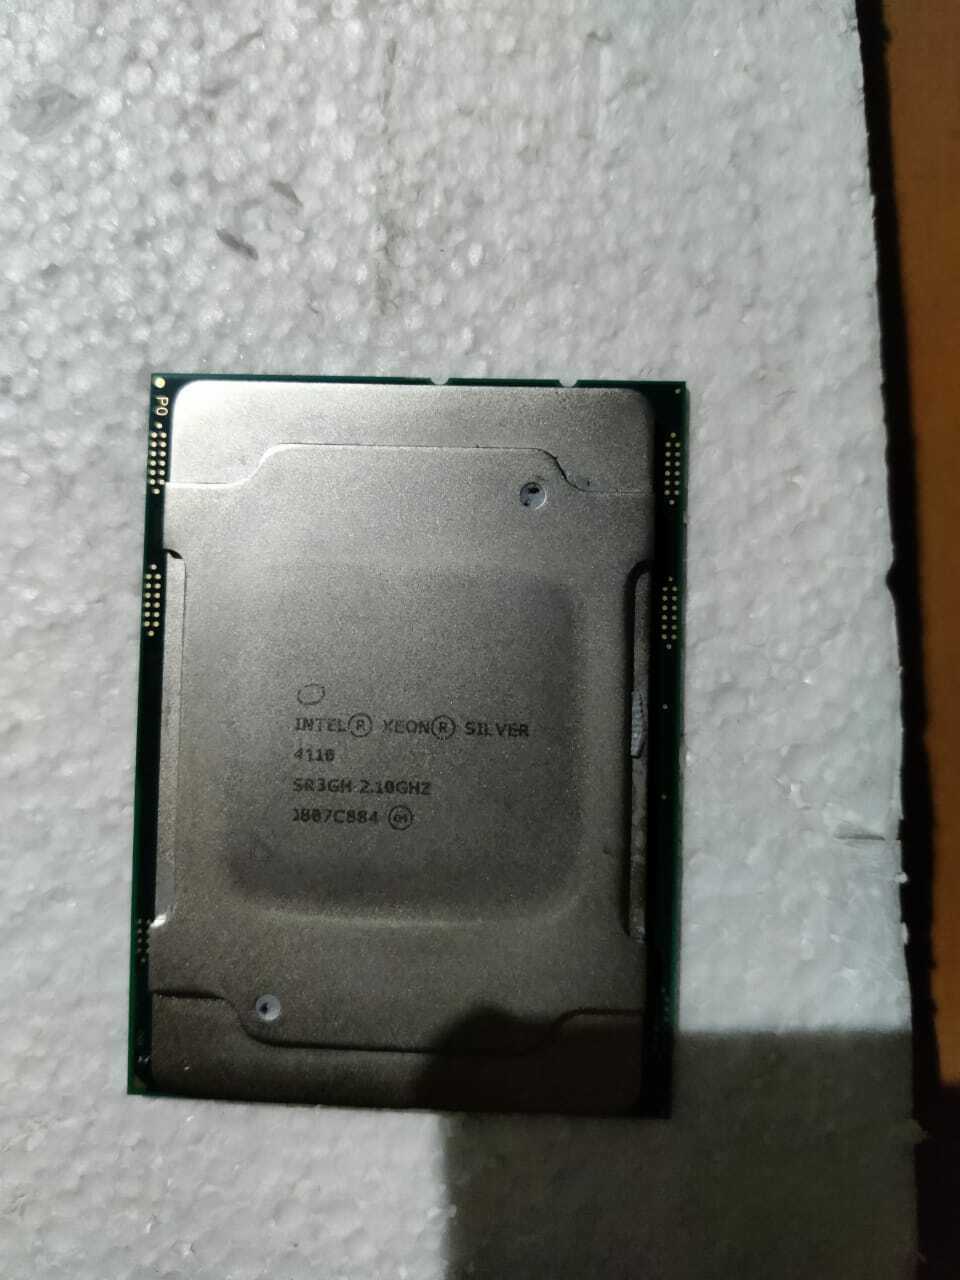 1 Pcs Home Intel Xeon Silver 4110 Linux